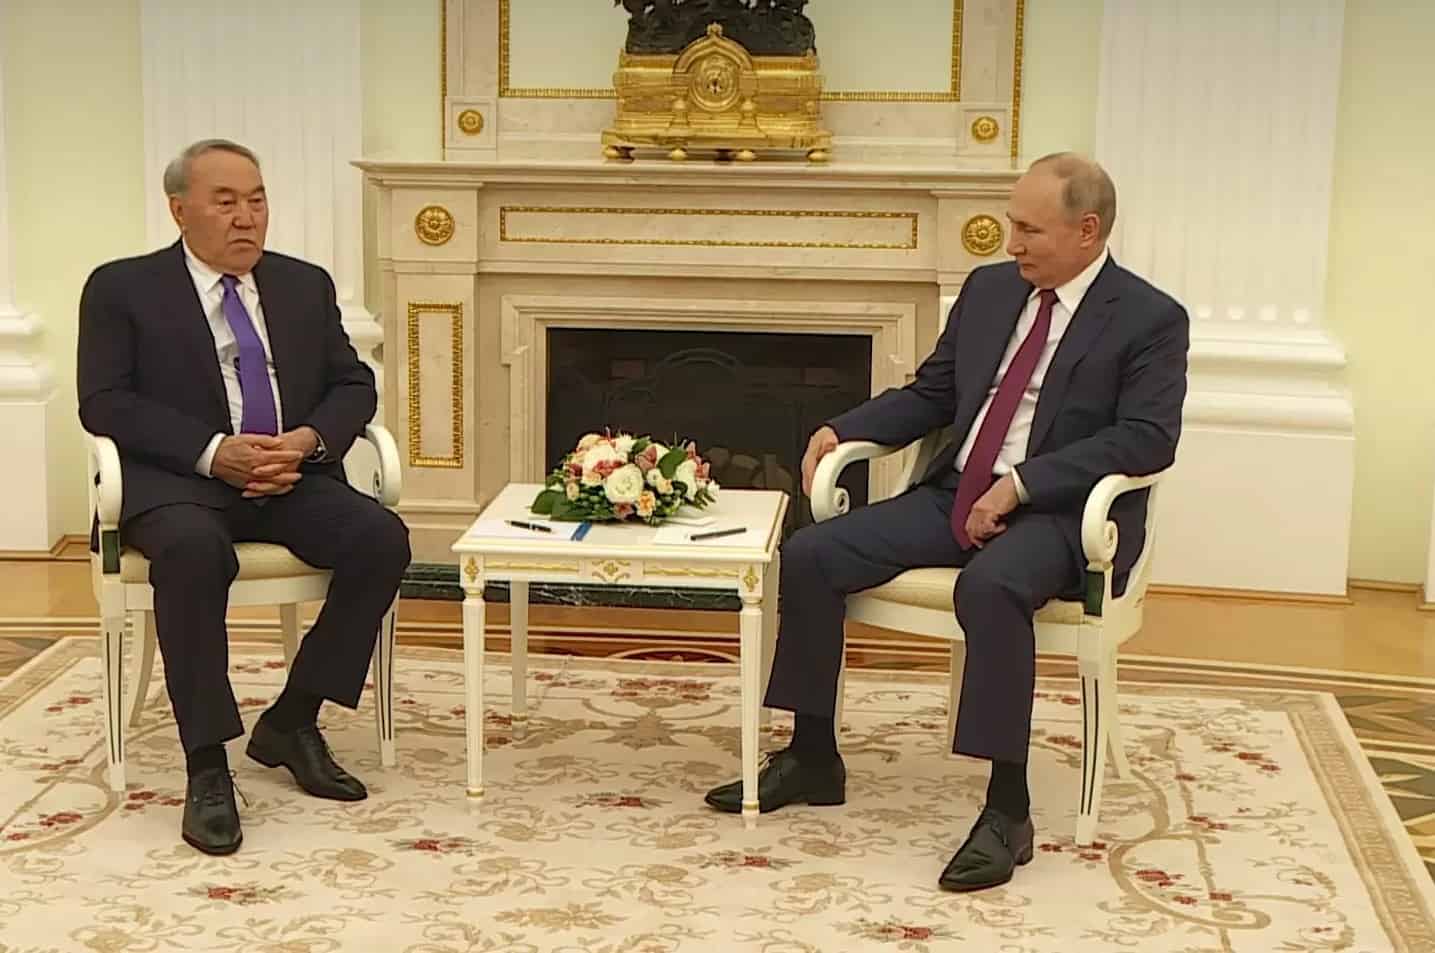 "Мен енді президент емеспін...". Назарбаев пен Путиннің кездесуінде не айтылды?